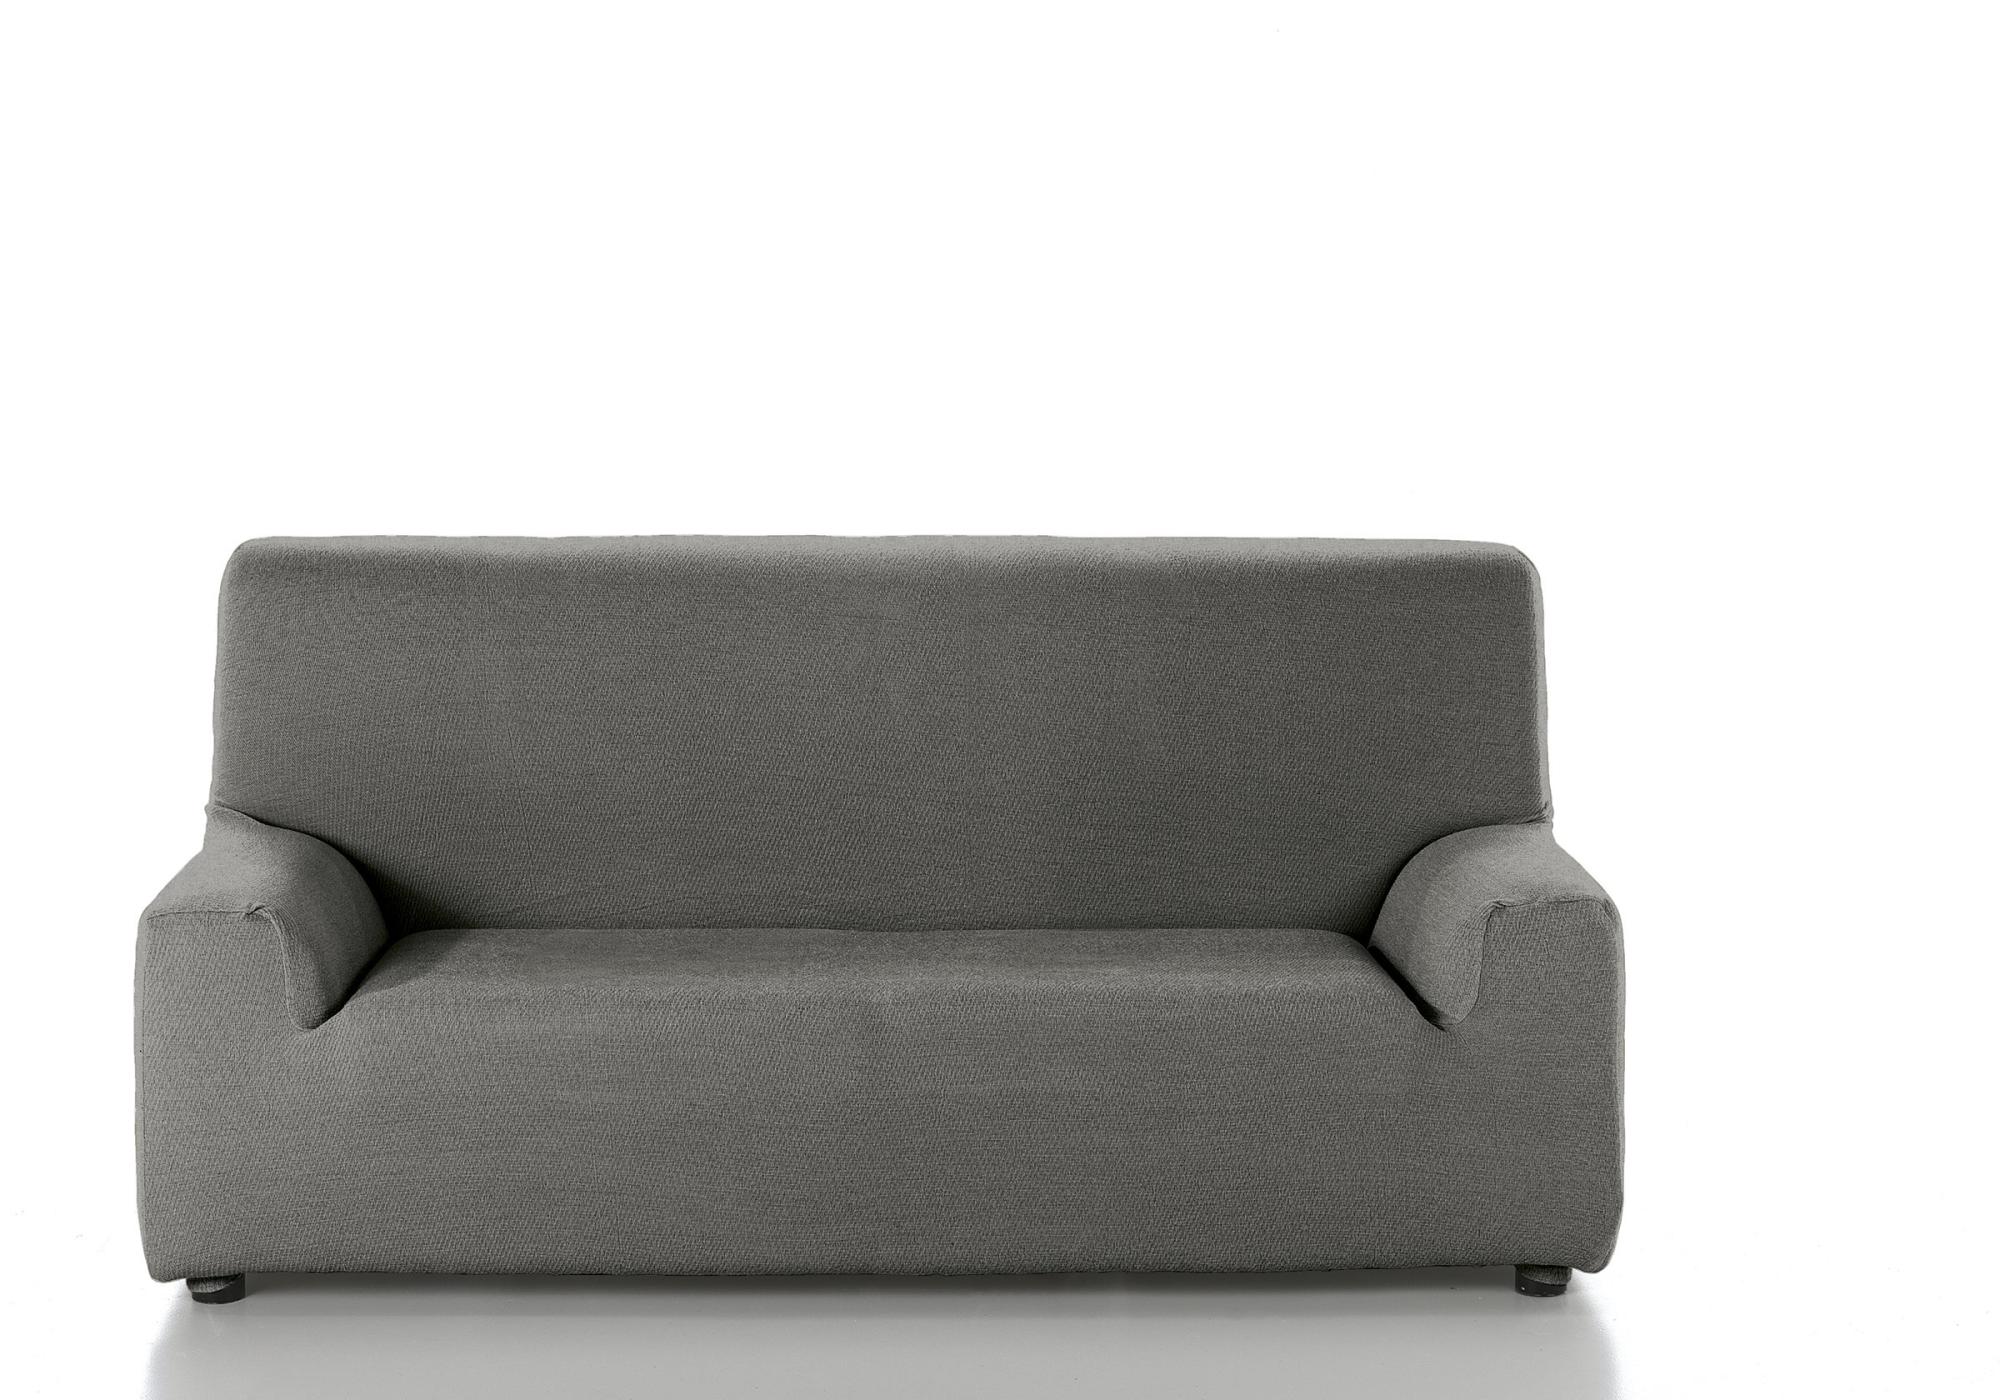 Funda sofá 2 plazas funda sofá elástica gris plata con 1 funda de